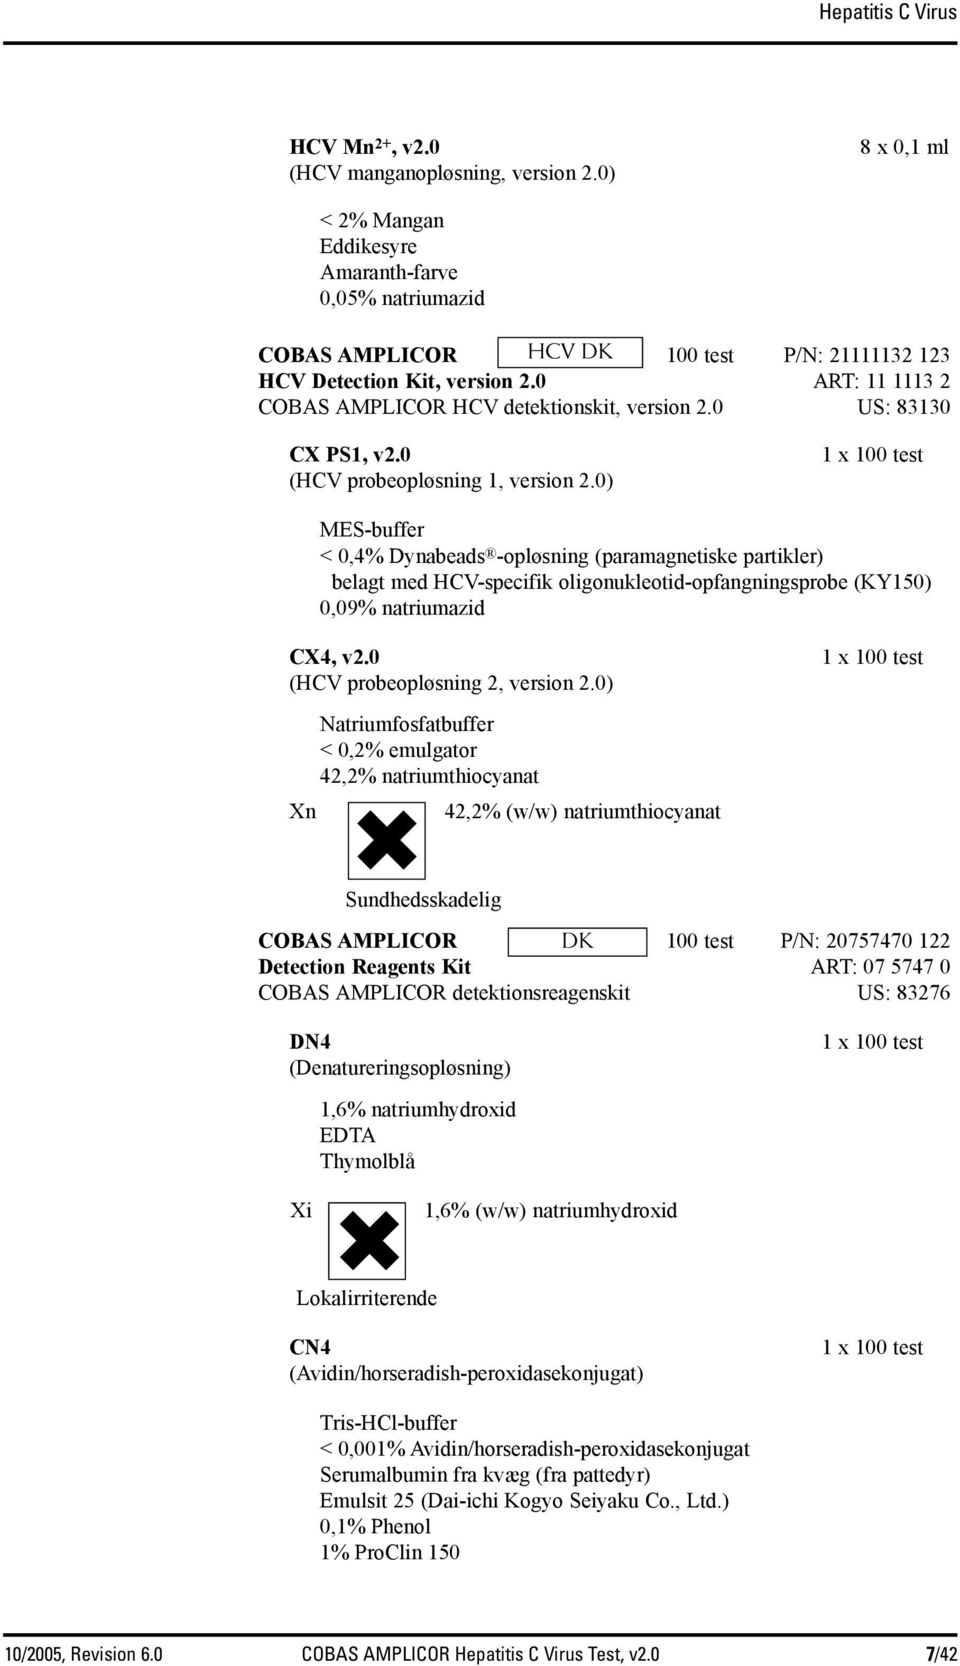 0 ART: 11 1113 2 COBAS AMPLICOR HCV detektionskit, version 2.0 US: 83130 CX PS1, v2.0 (HCV probeopløsning 1, version 2.